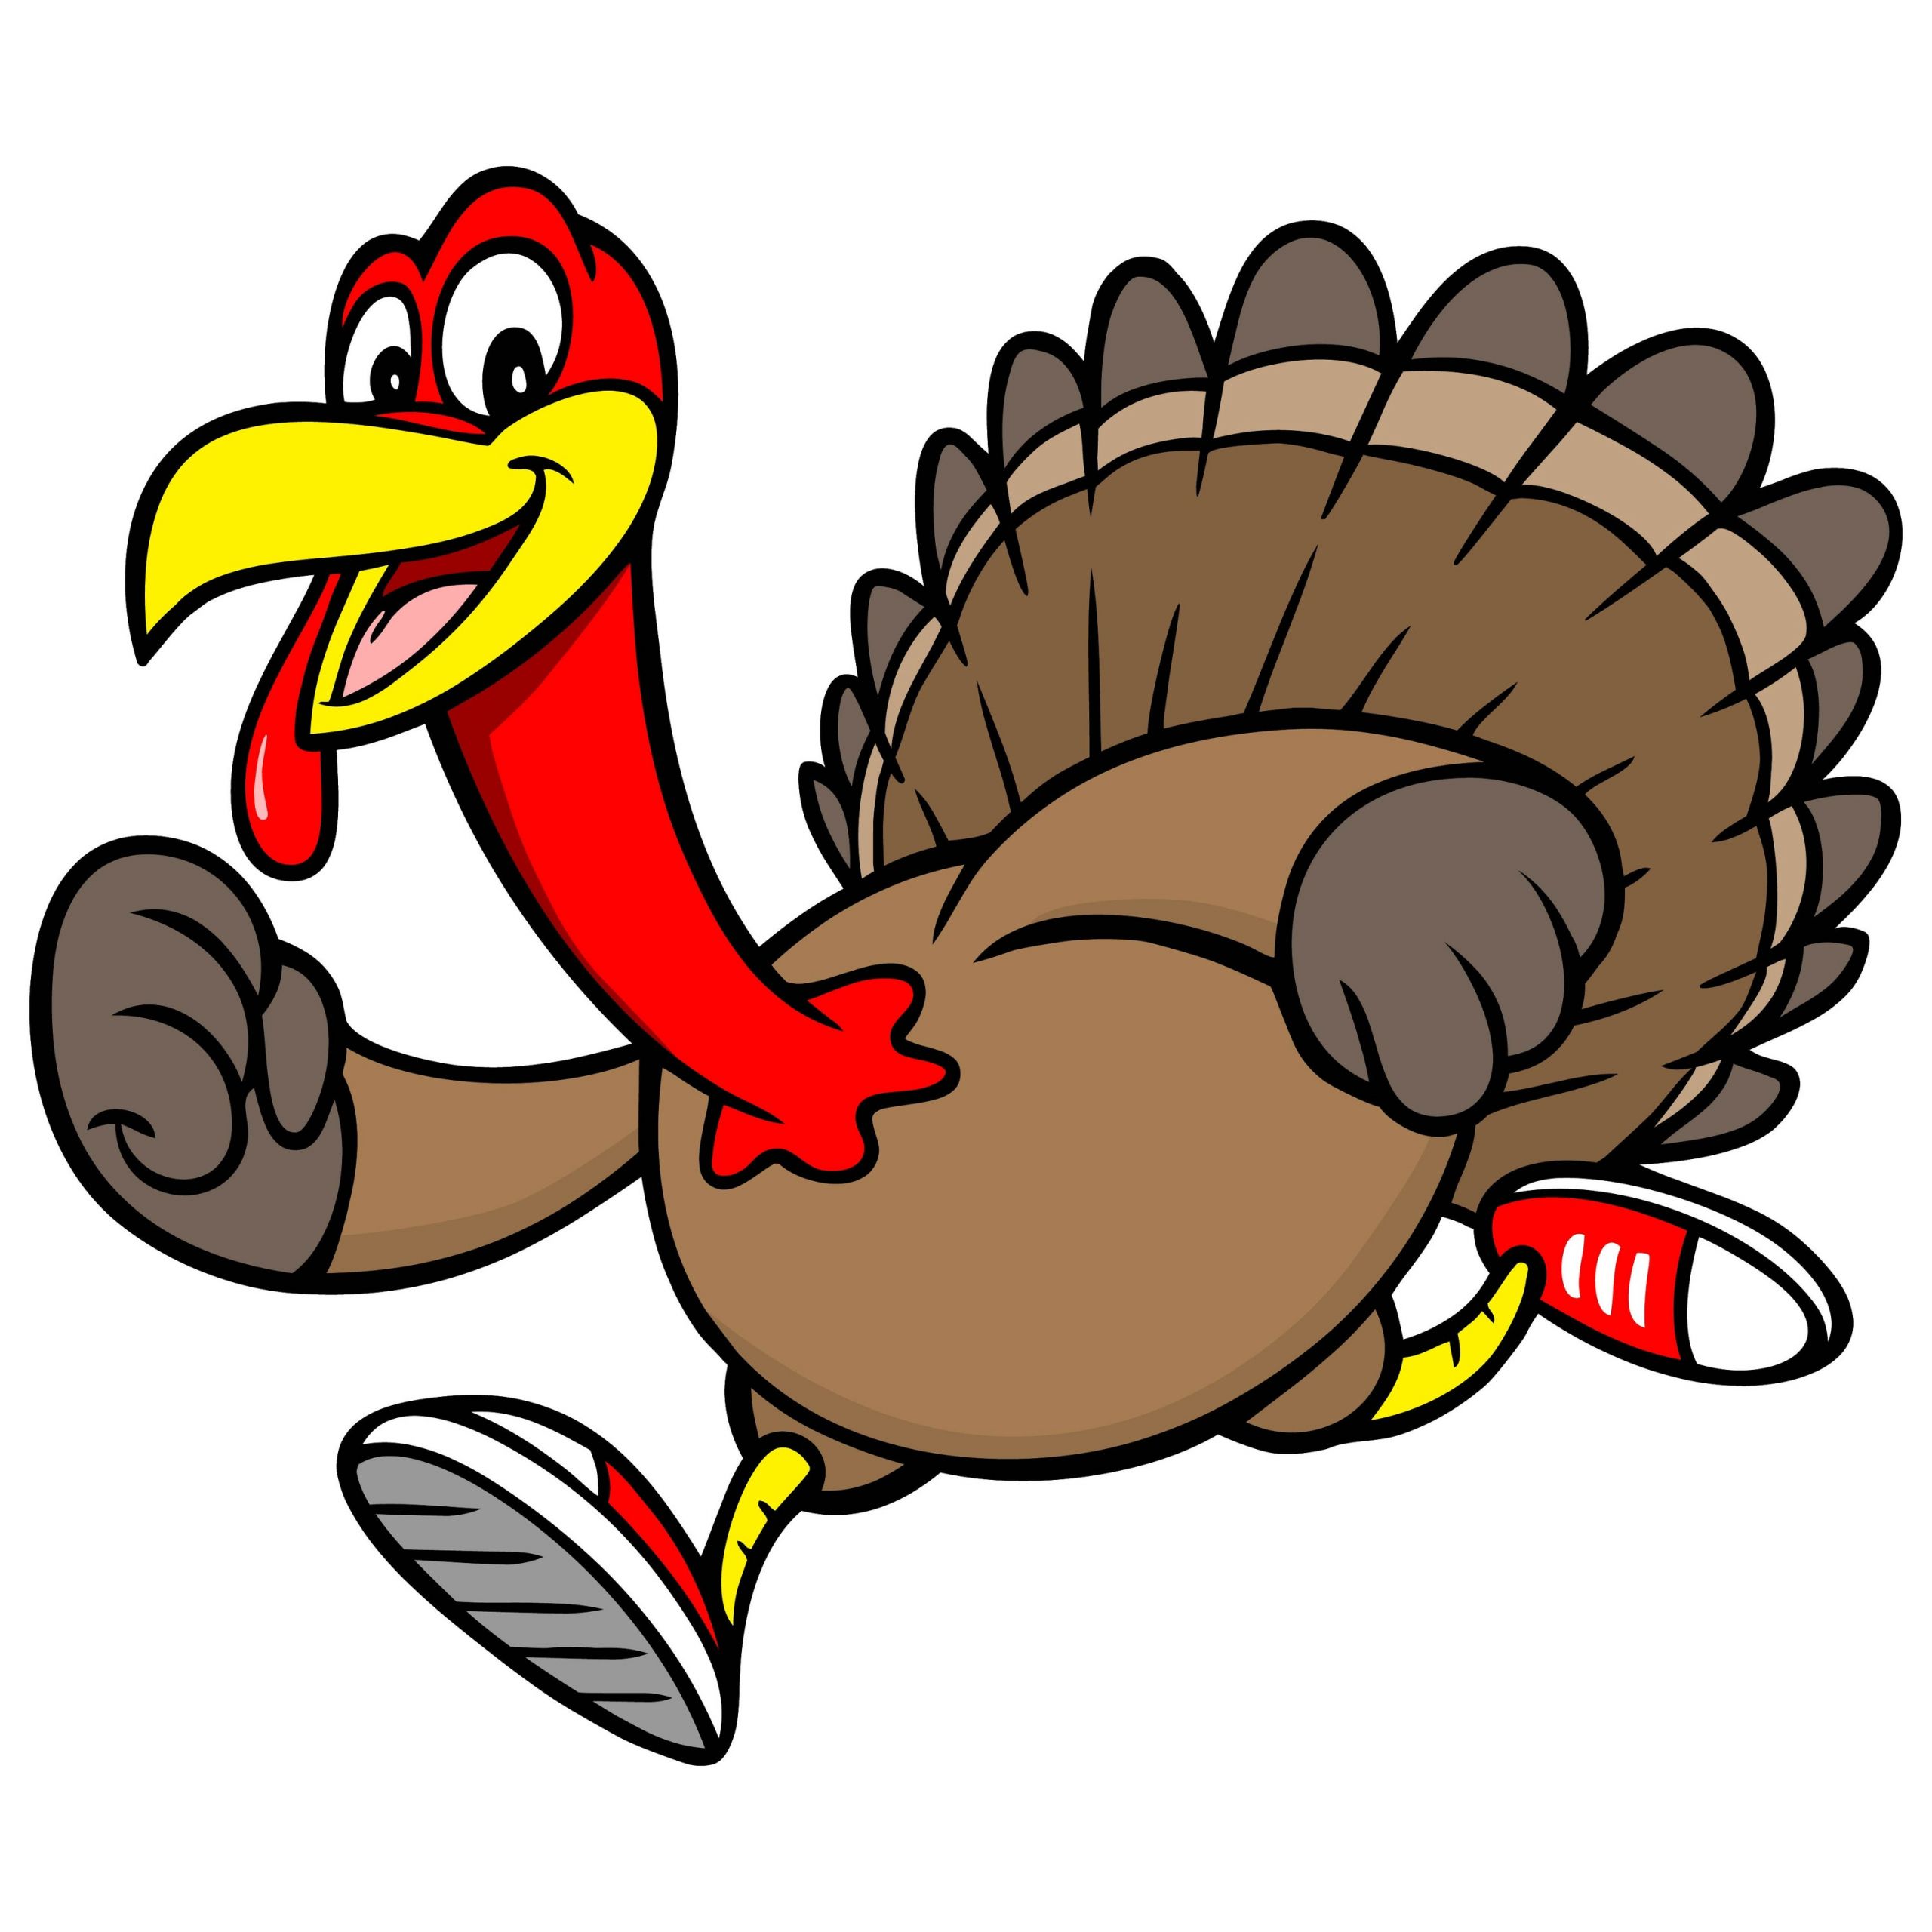 Cartoon Thanksgiving Turkey
 A vector illustration of a cartoon Turkey running